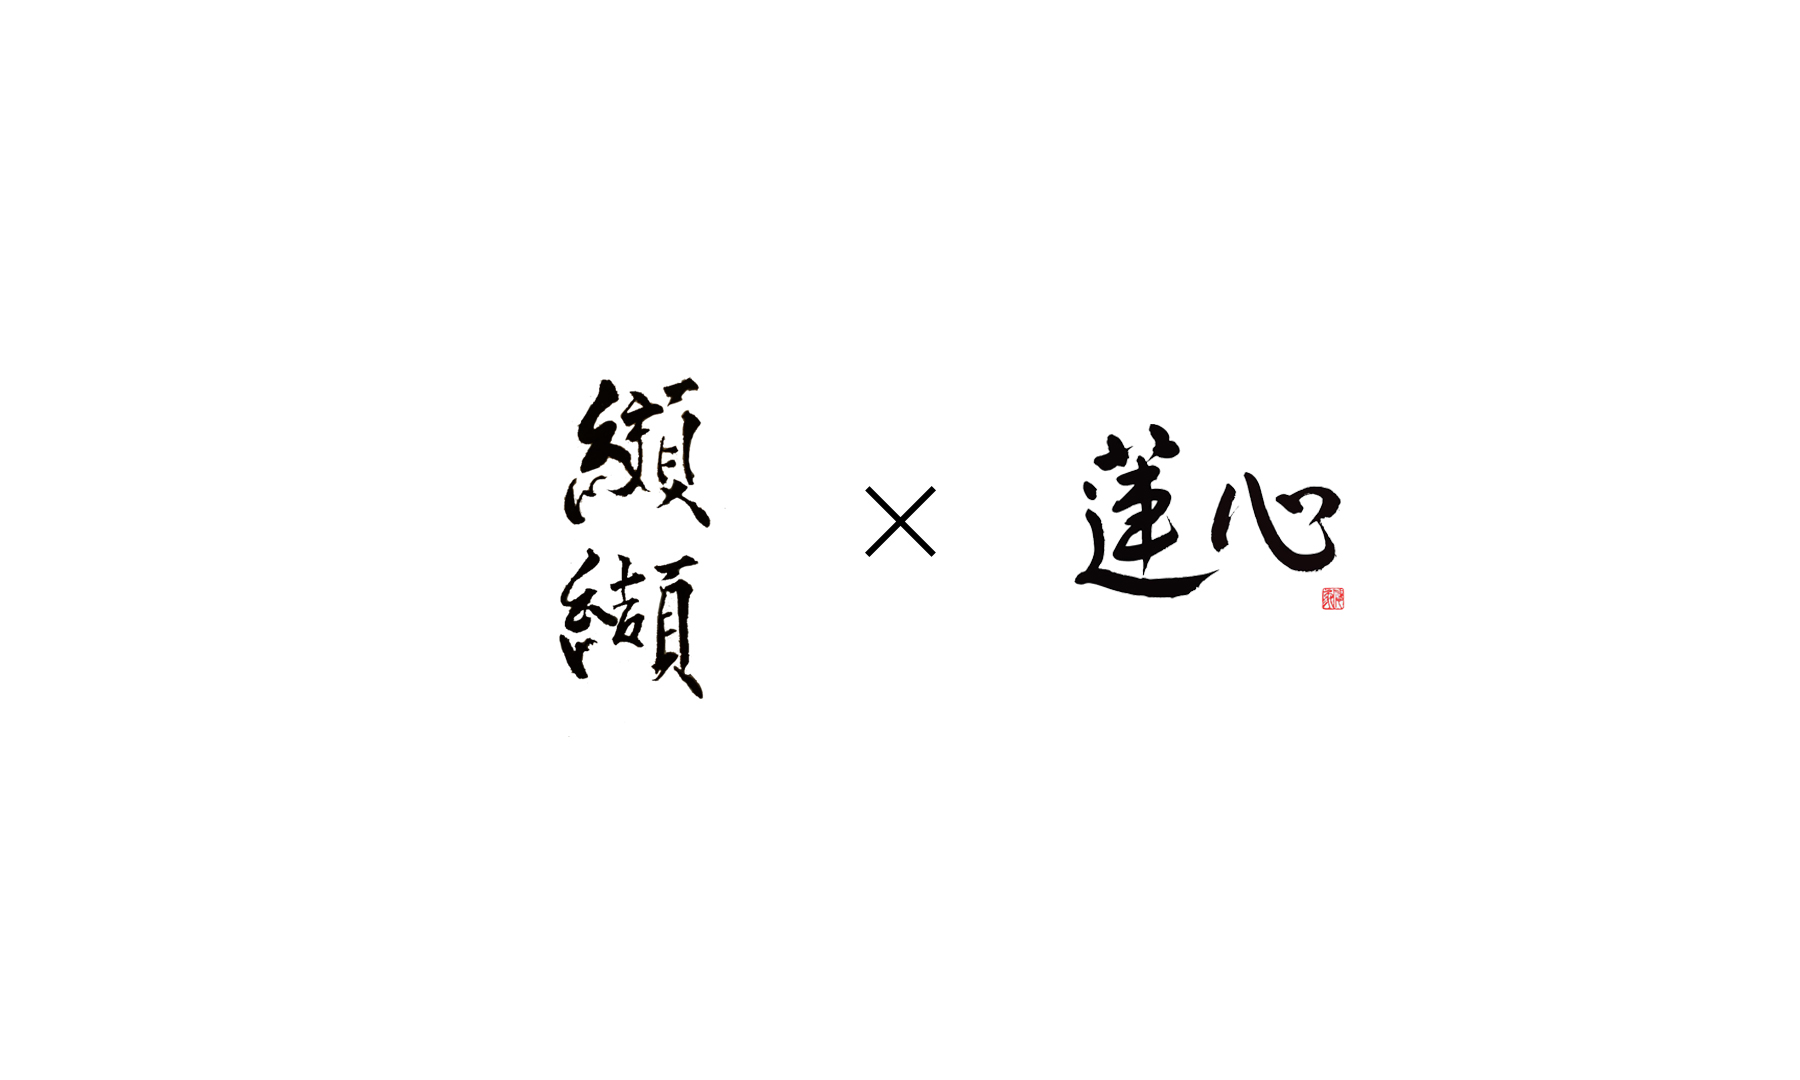 Koketsu × Renshin (Takeaway)'s image